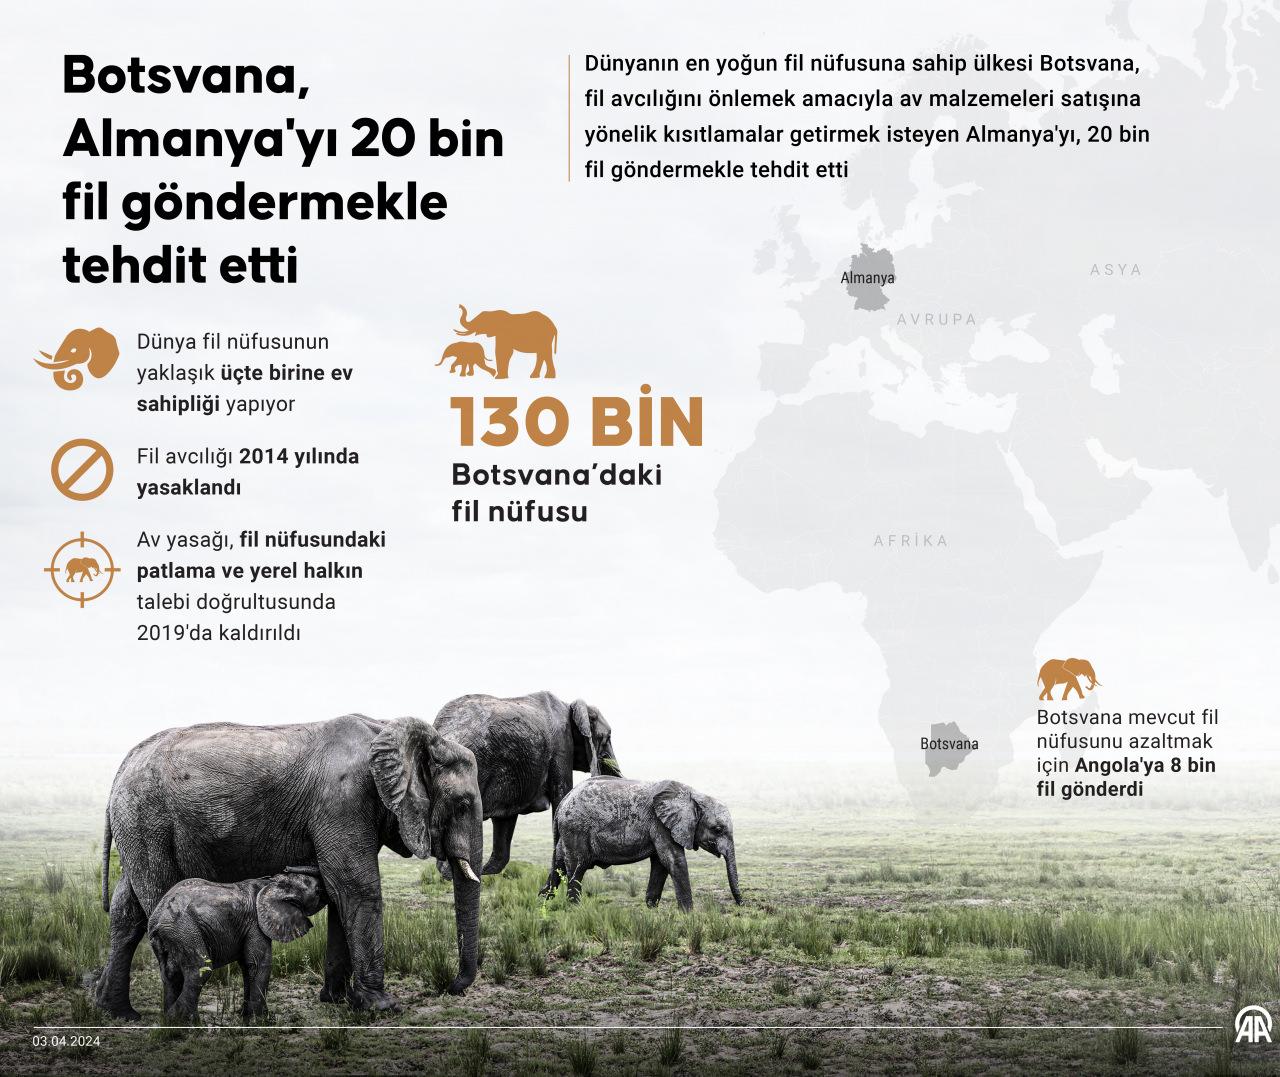 Botsvana Almanya'yı 20 bin fil göndermekle tehdit etti